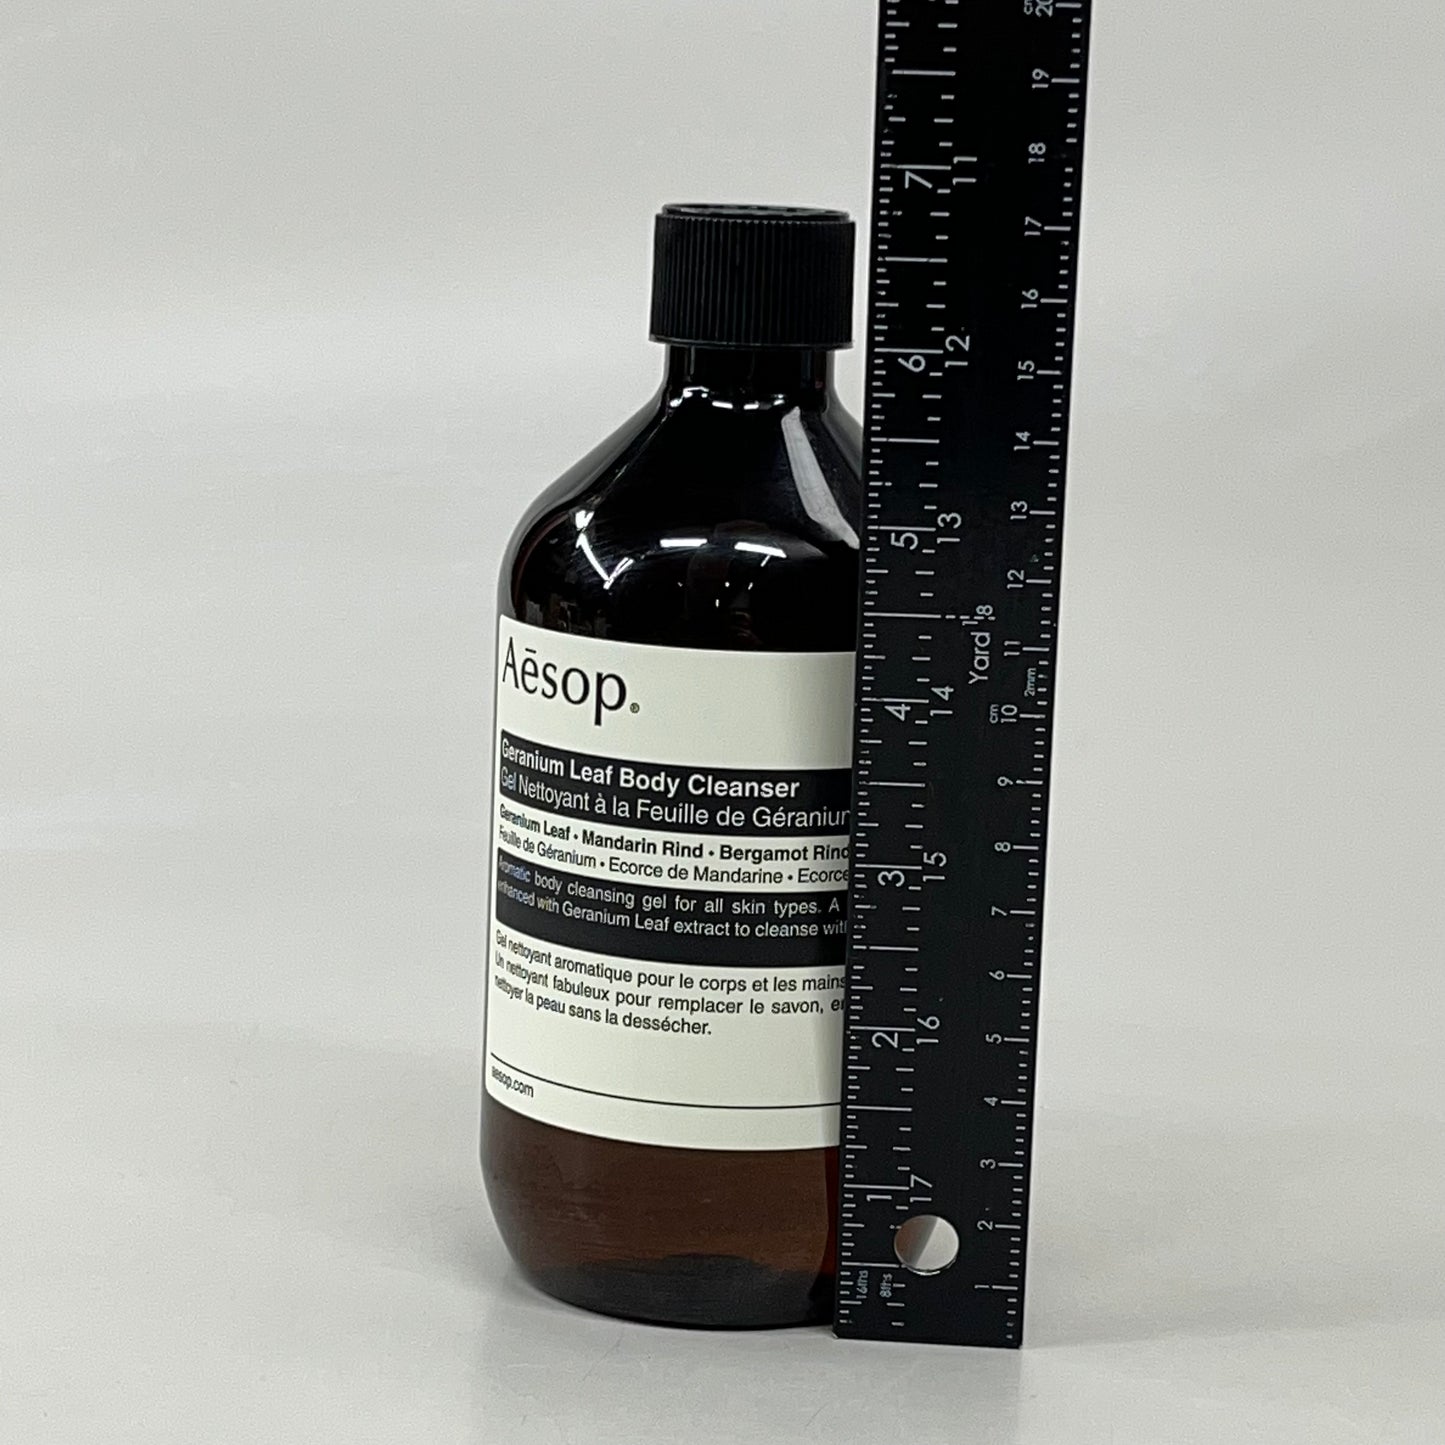 AESOP Geranium Leaf Body Cleanser With Lid 16.9 fl oz 30H0522A BB-12 Months